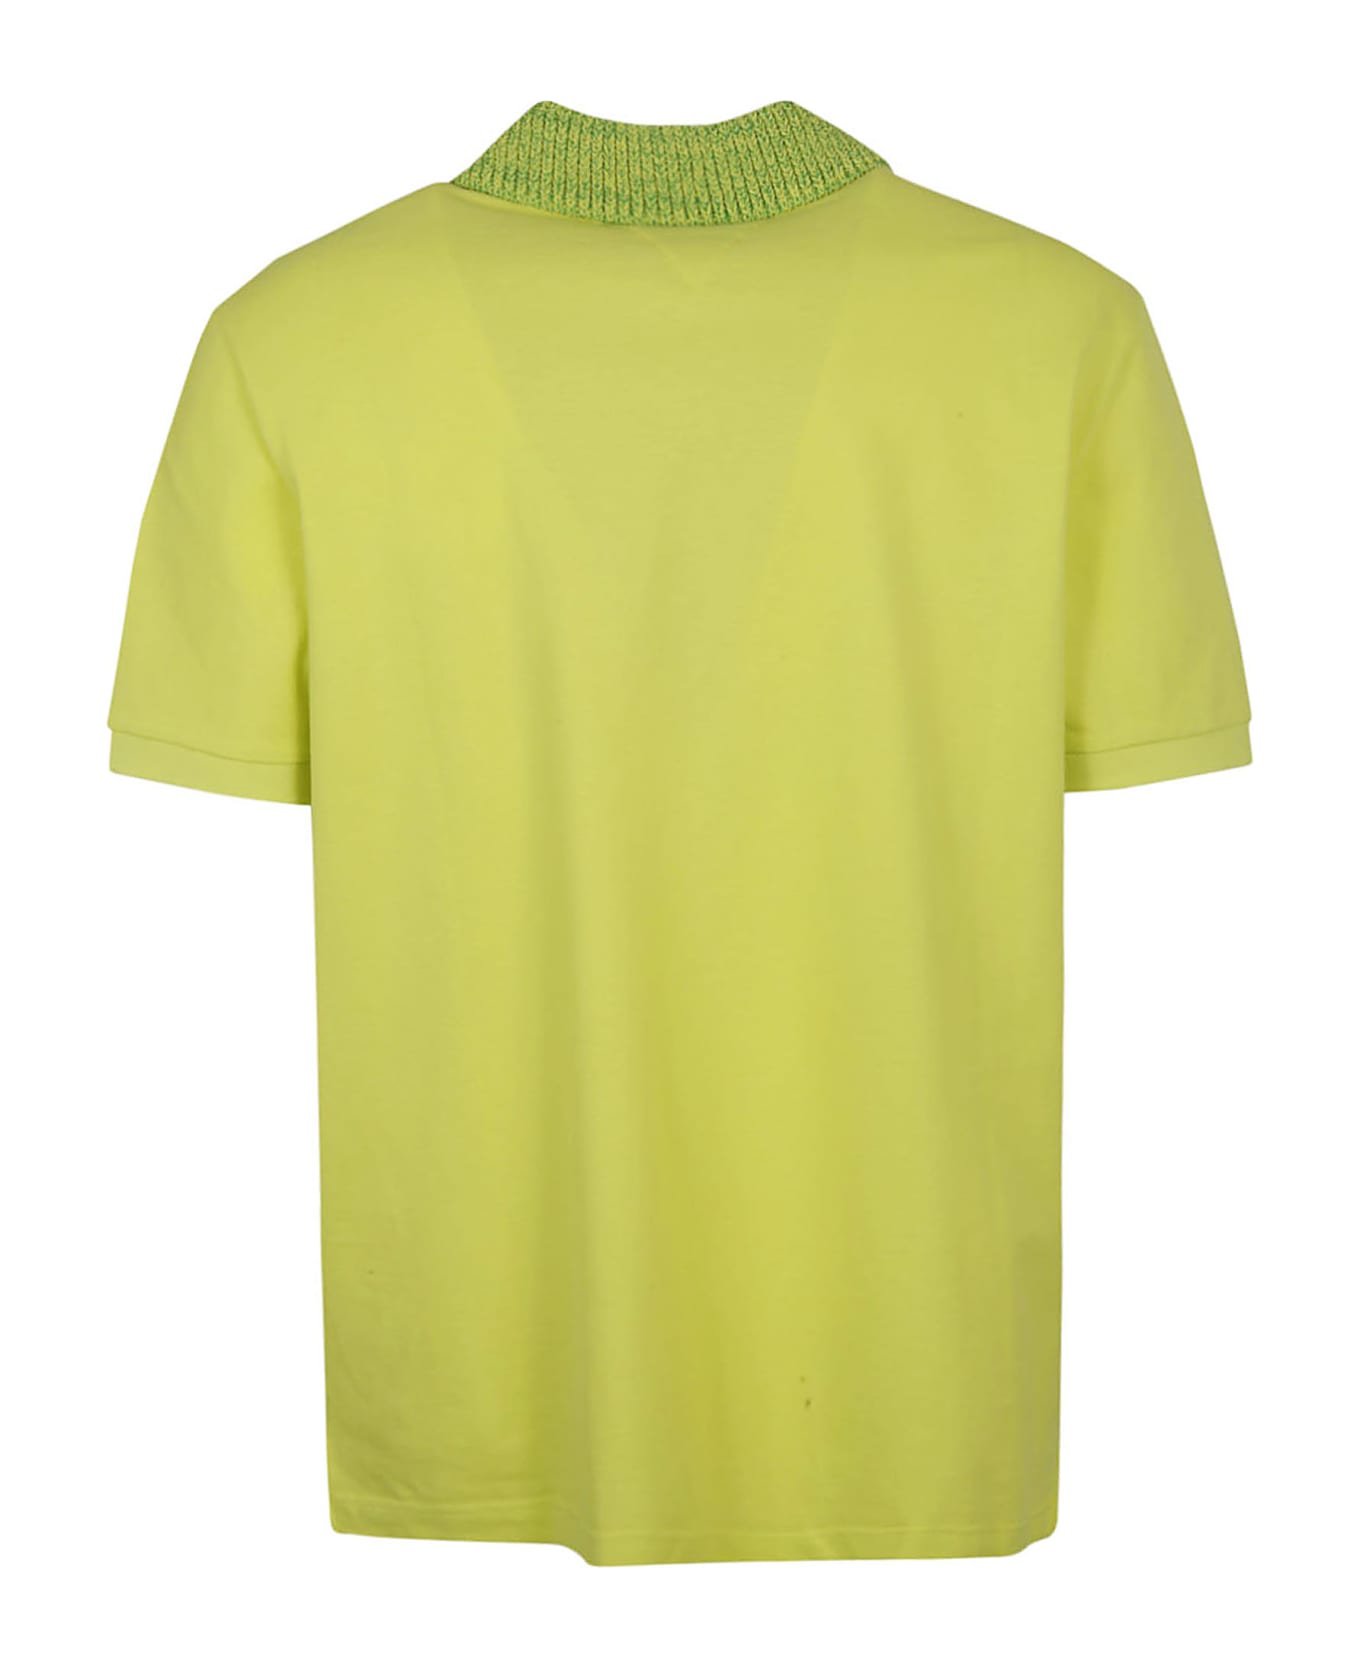 Bottega Veneta Piquet Knit Collar Polo Shirt - Kiwi